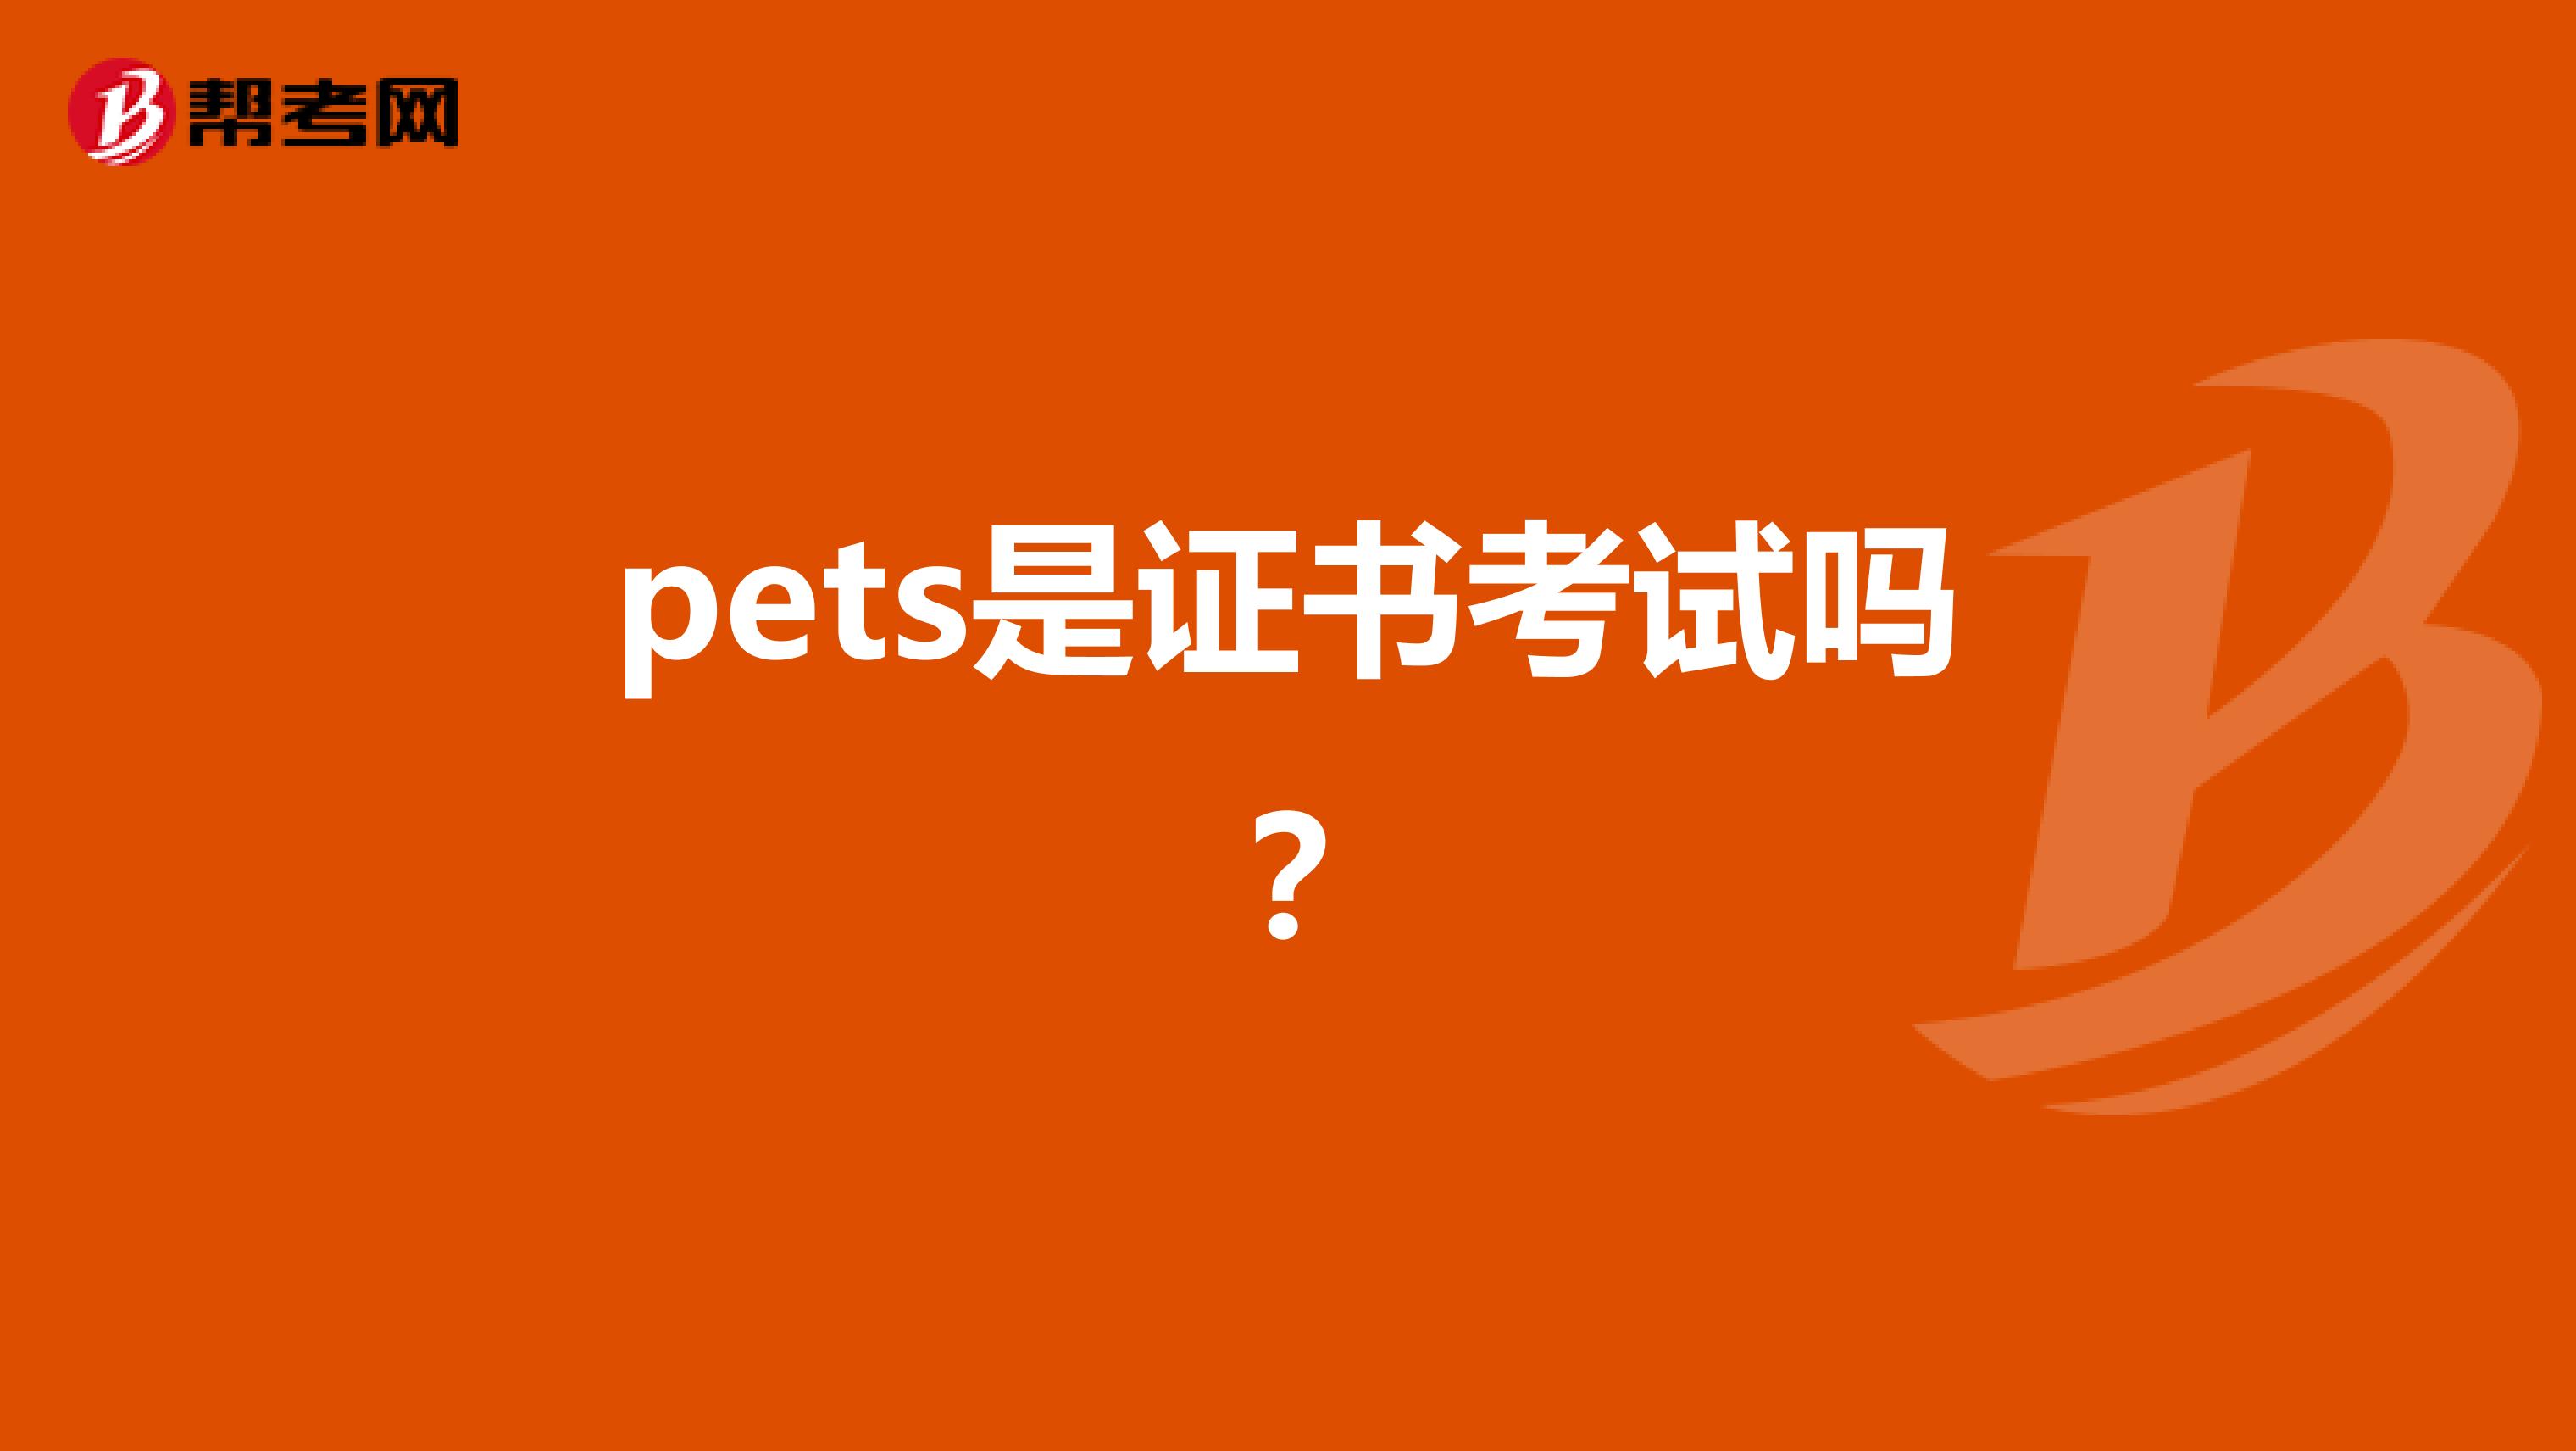 pets是证书考试吗？